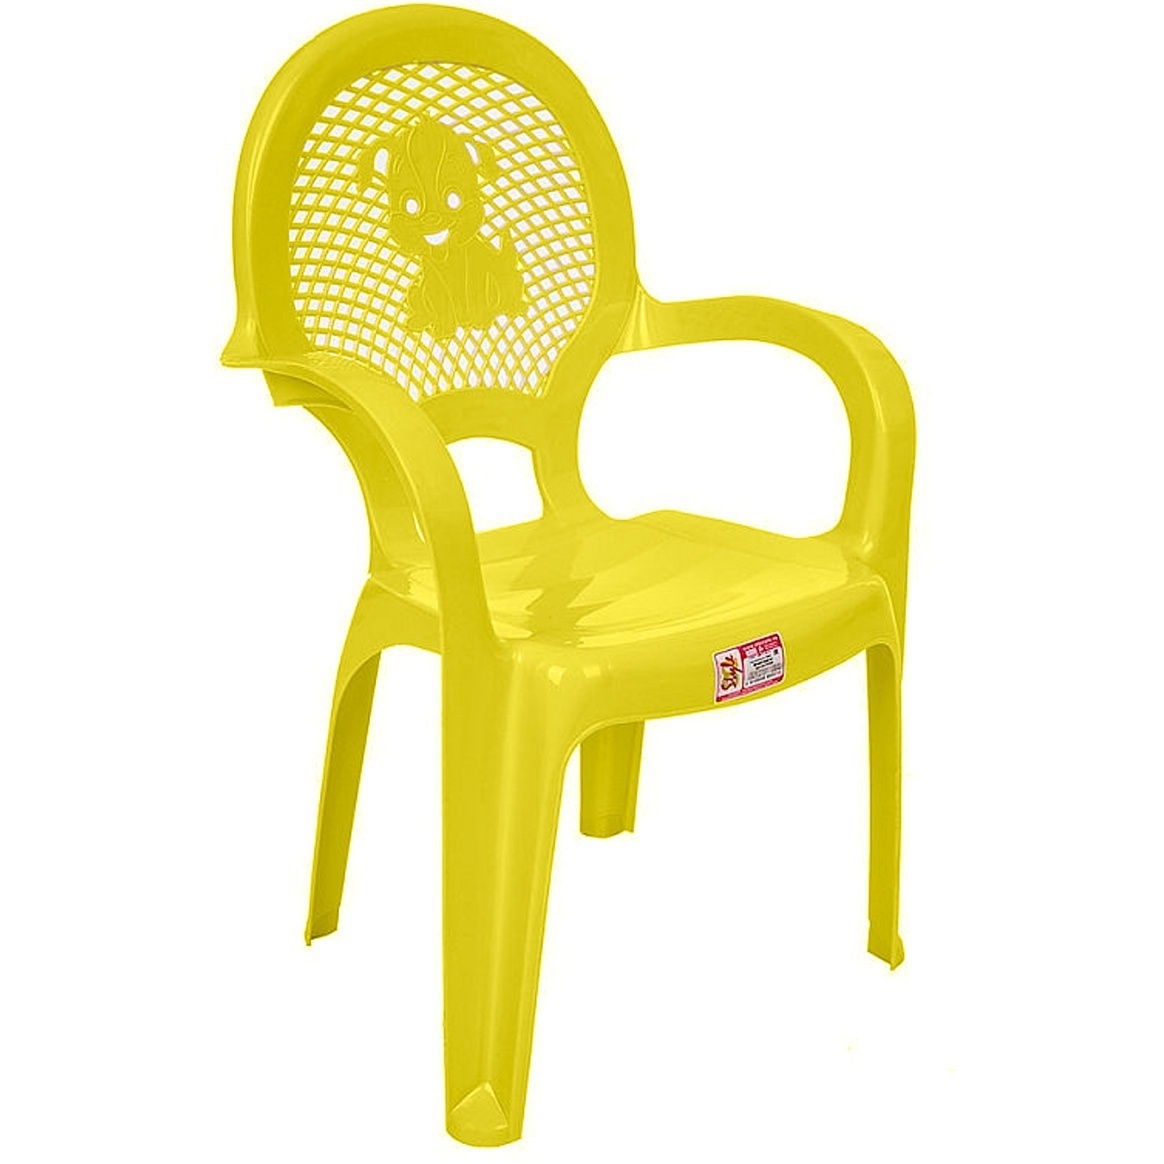 Детский стульчик желтый 06206 ЖЕЛТ